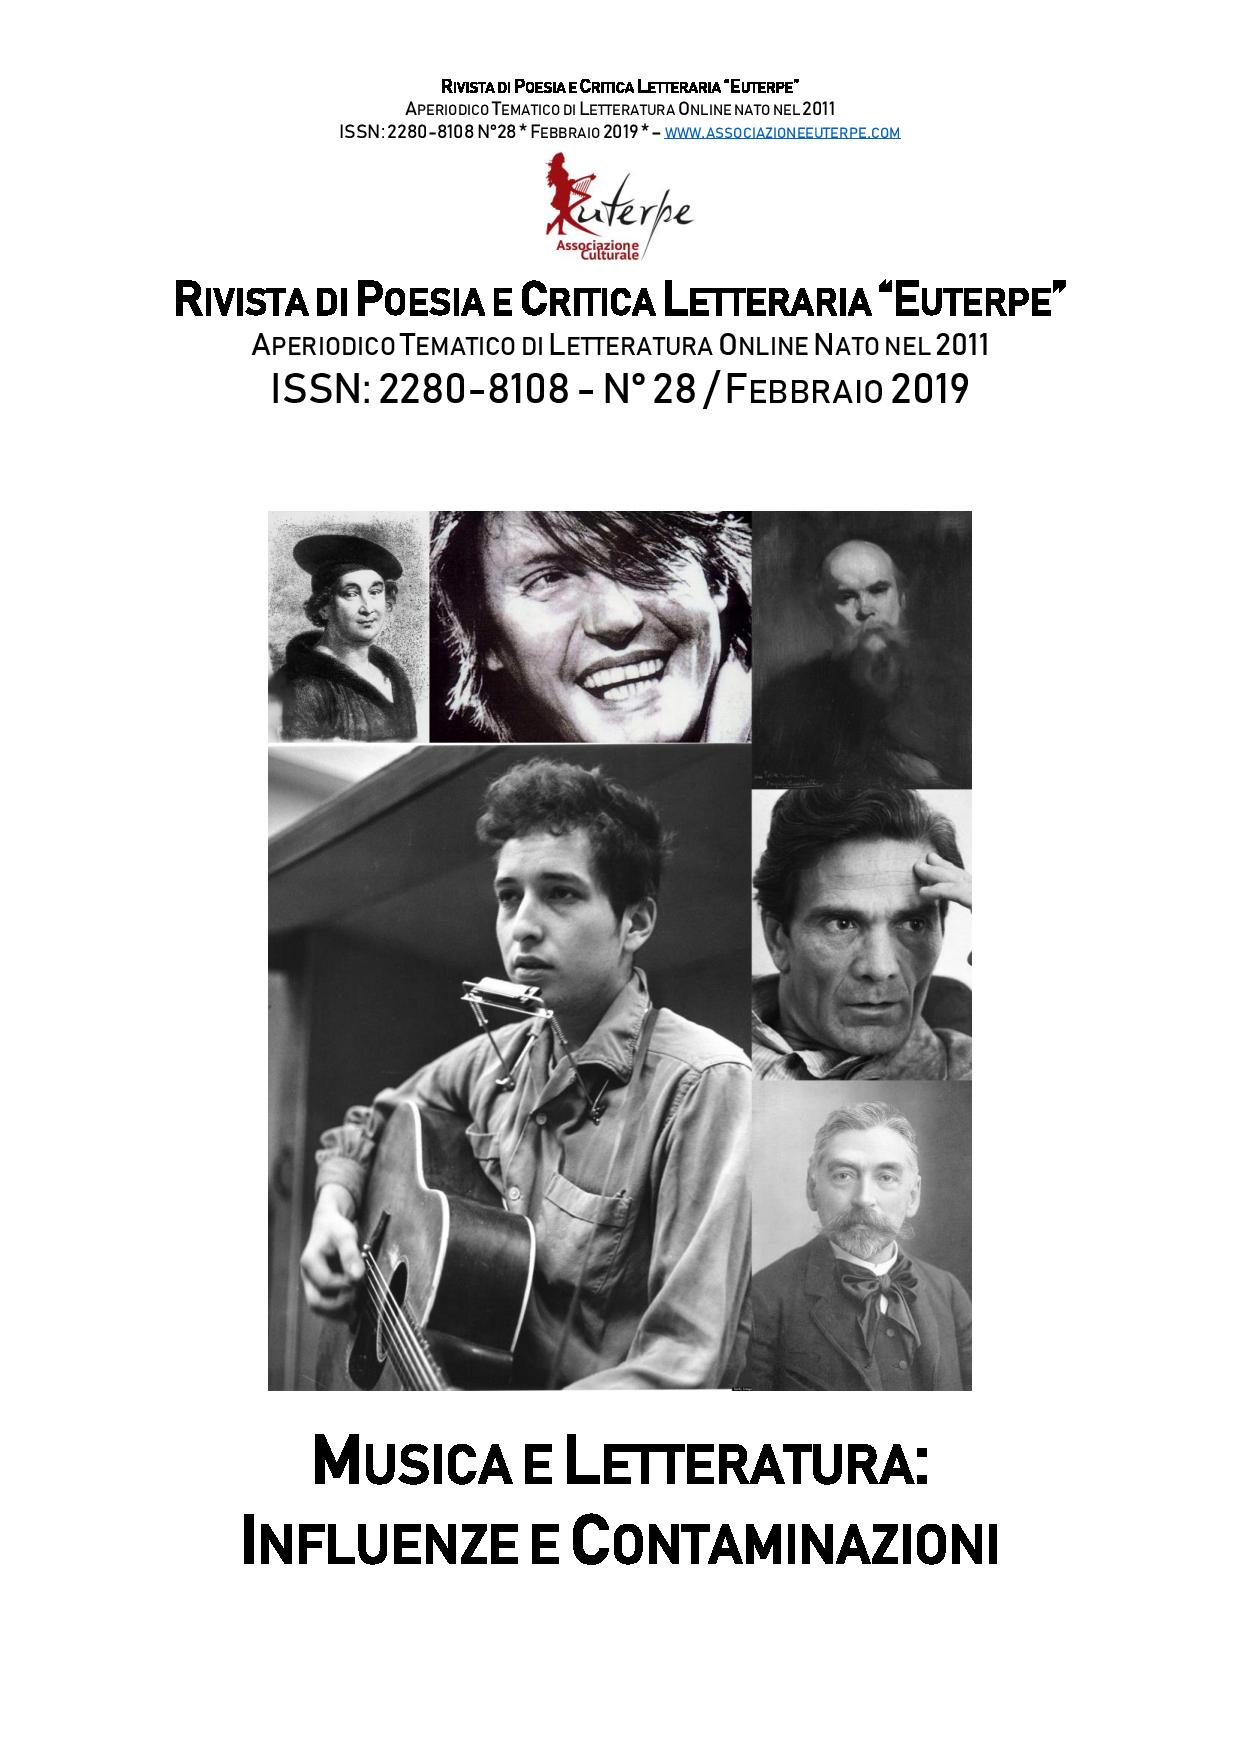 Euterpe n. 28 - Febbraio 2019 - Musica e letteratura, influenze e contaminazioni-page-001.jpg